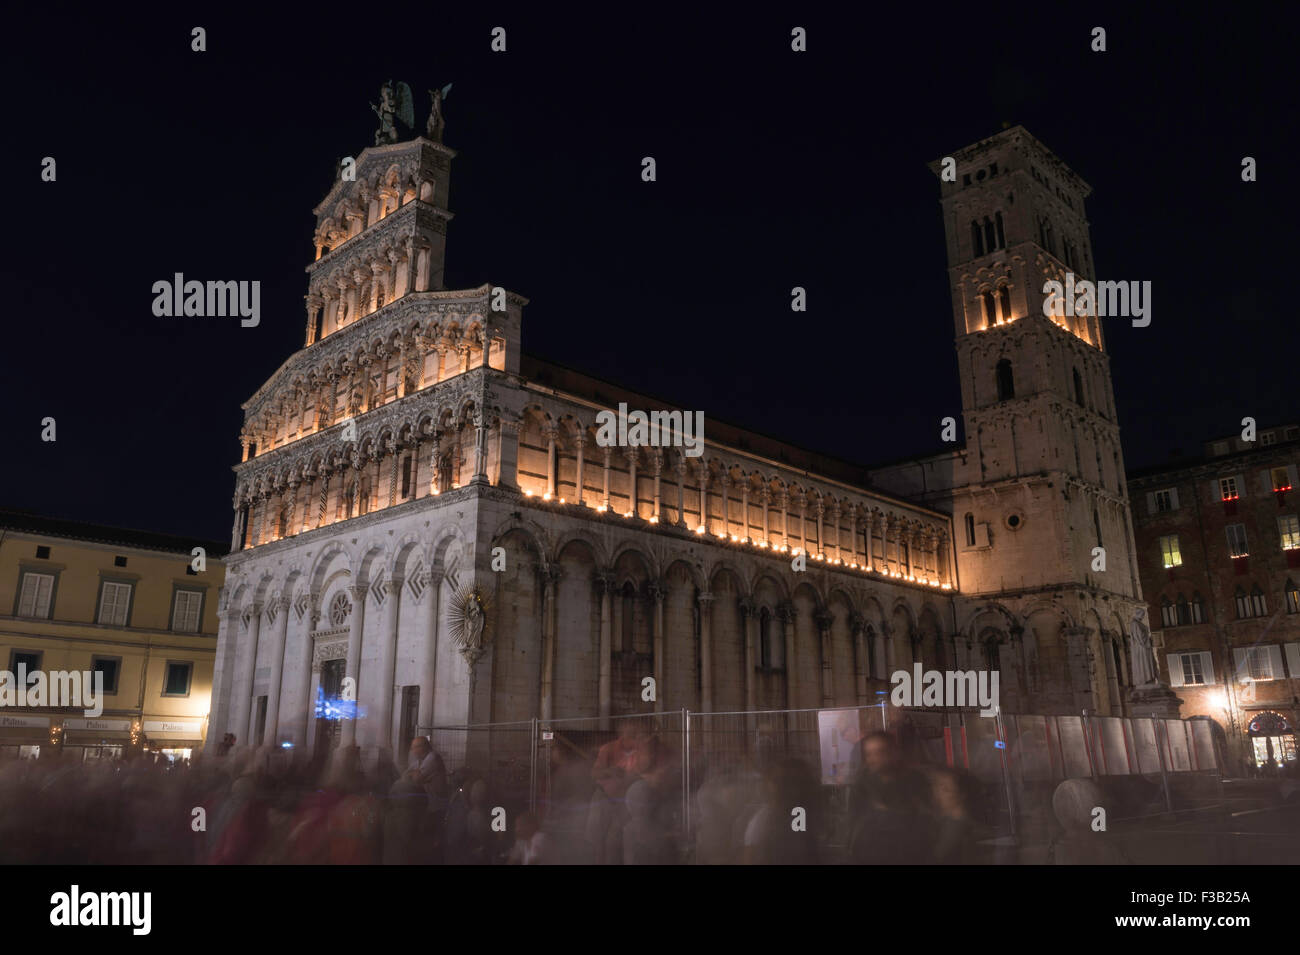 La lumière des bougies à San Michele in Foro, Luminaria di Santa Croce, basilique catholique romaine église, Lucca, Toscane, Italie Banque D'Images